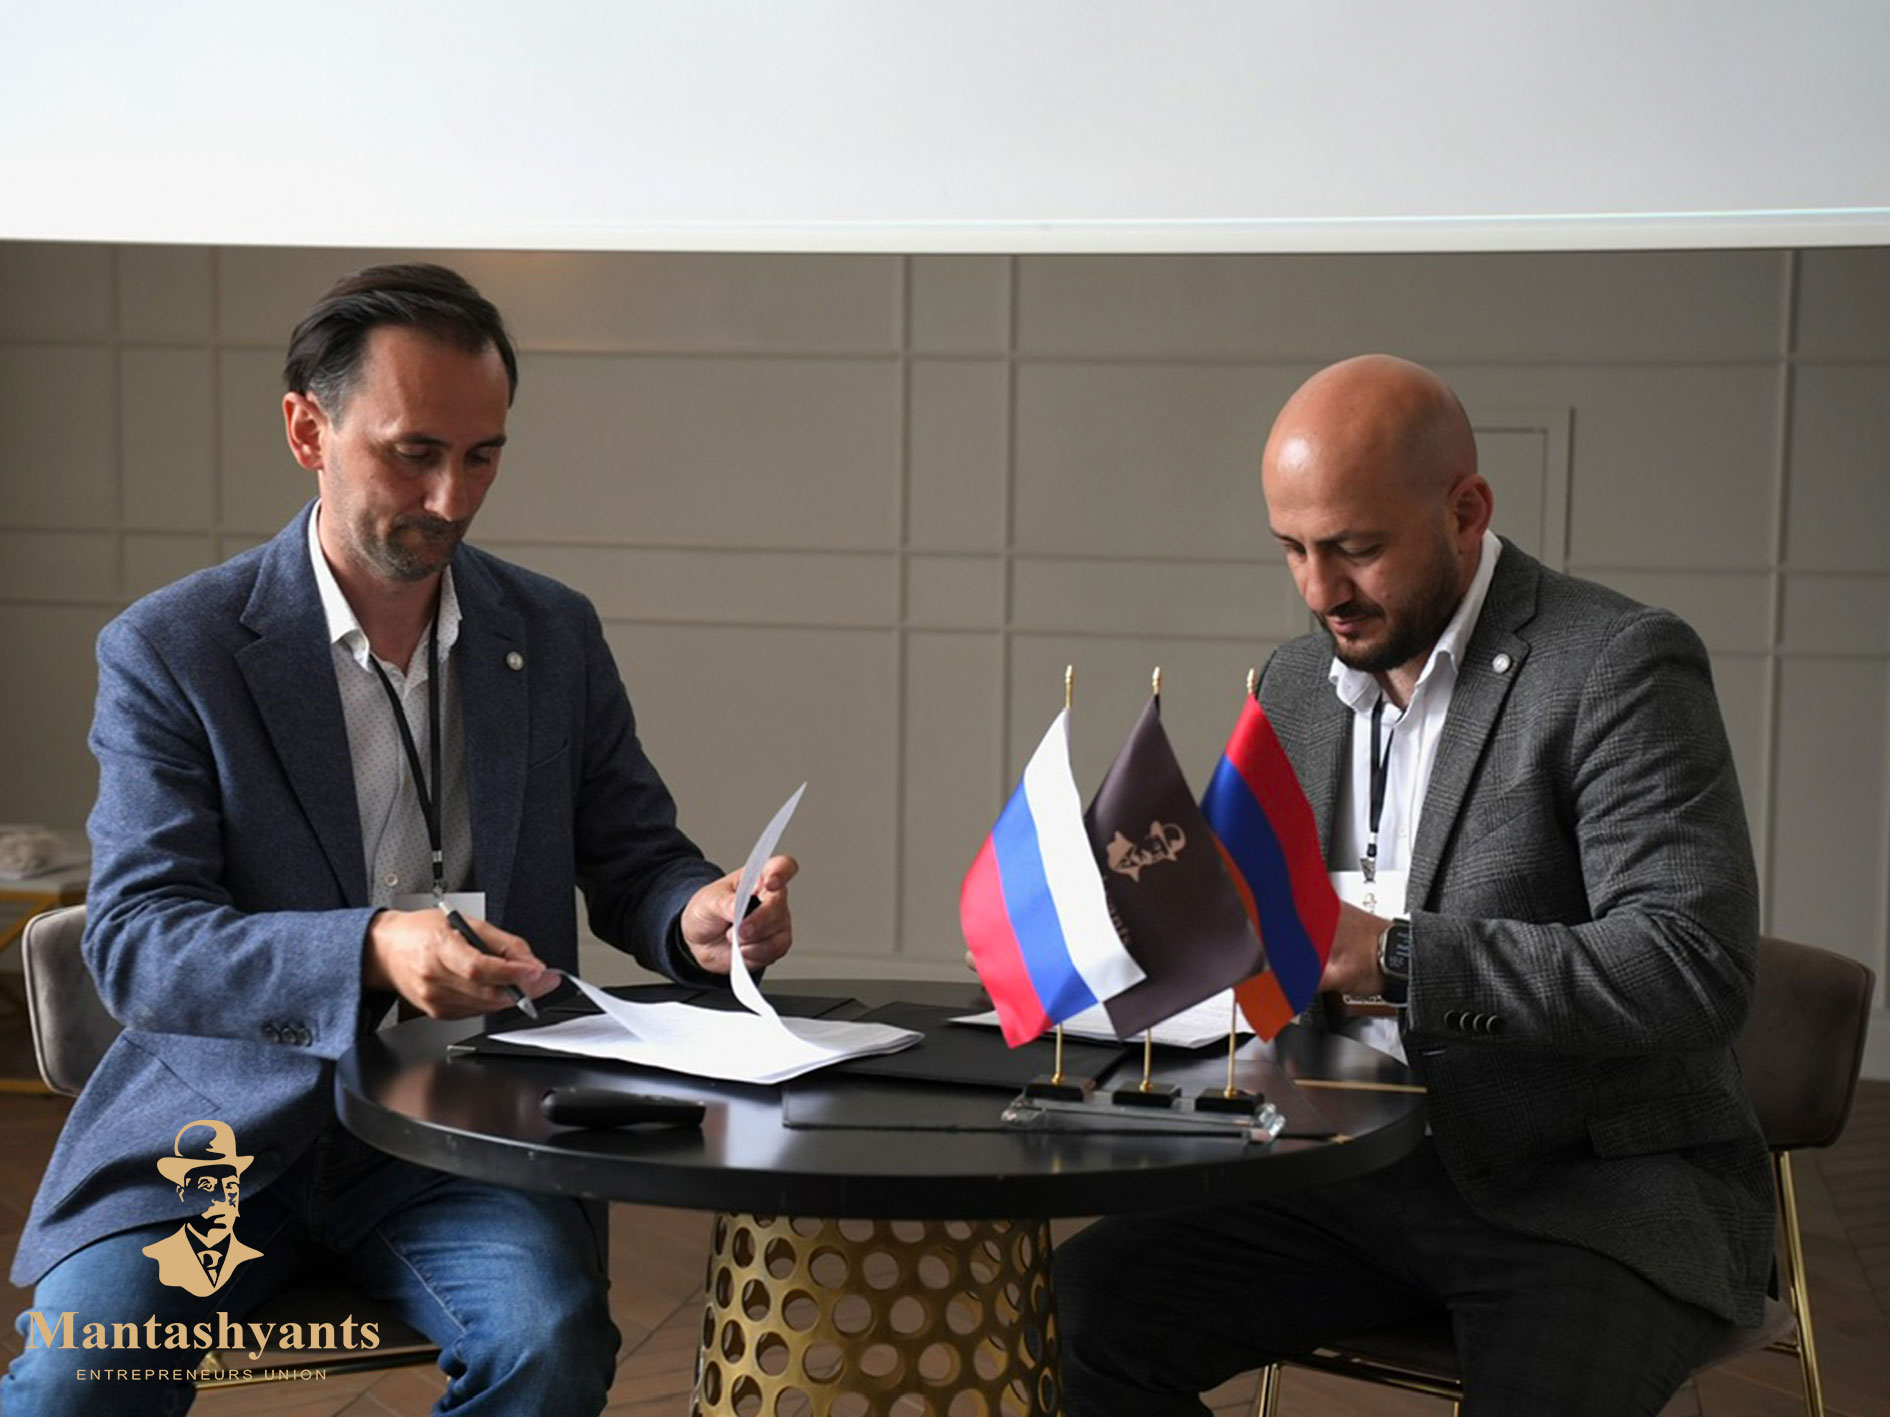 Армянские предприниматели из Ростова присоединились к крупнейшей всеармянской бизнес-сети